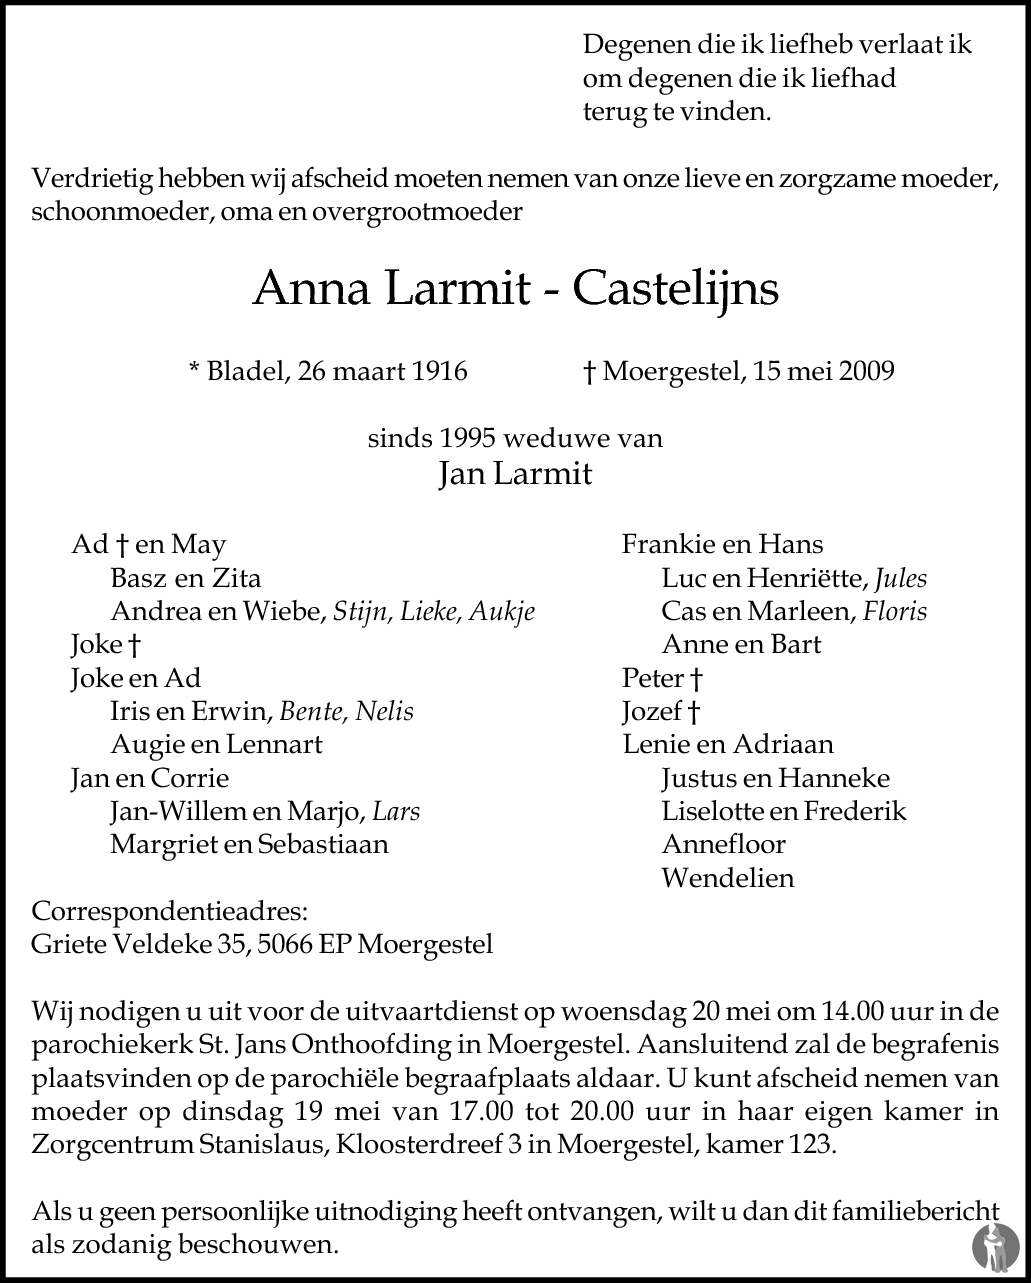 Overlijdensbericht van Anna Larmit - Castelijns in Brabants Dagblad